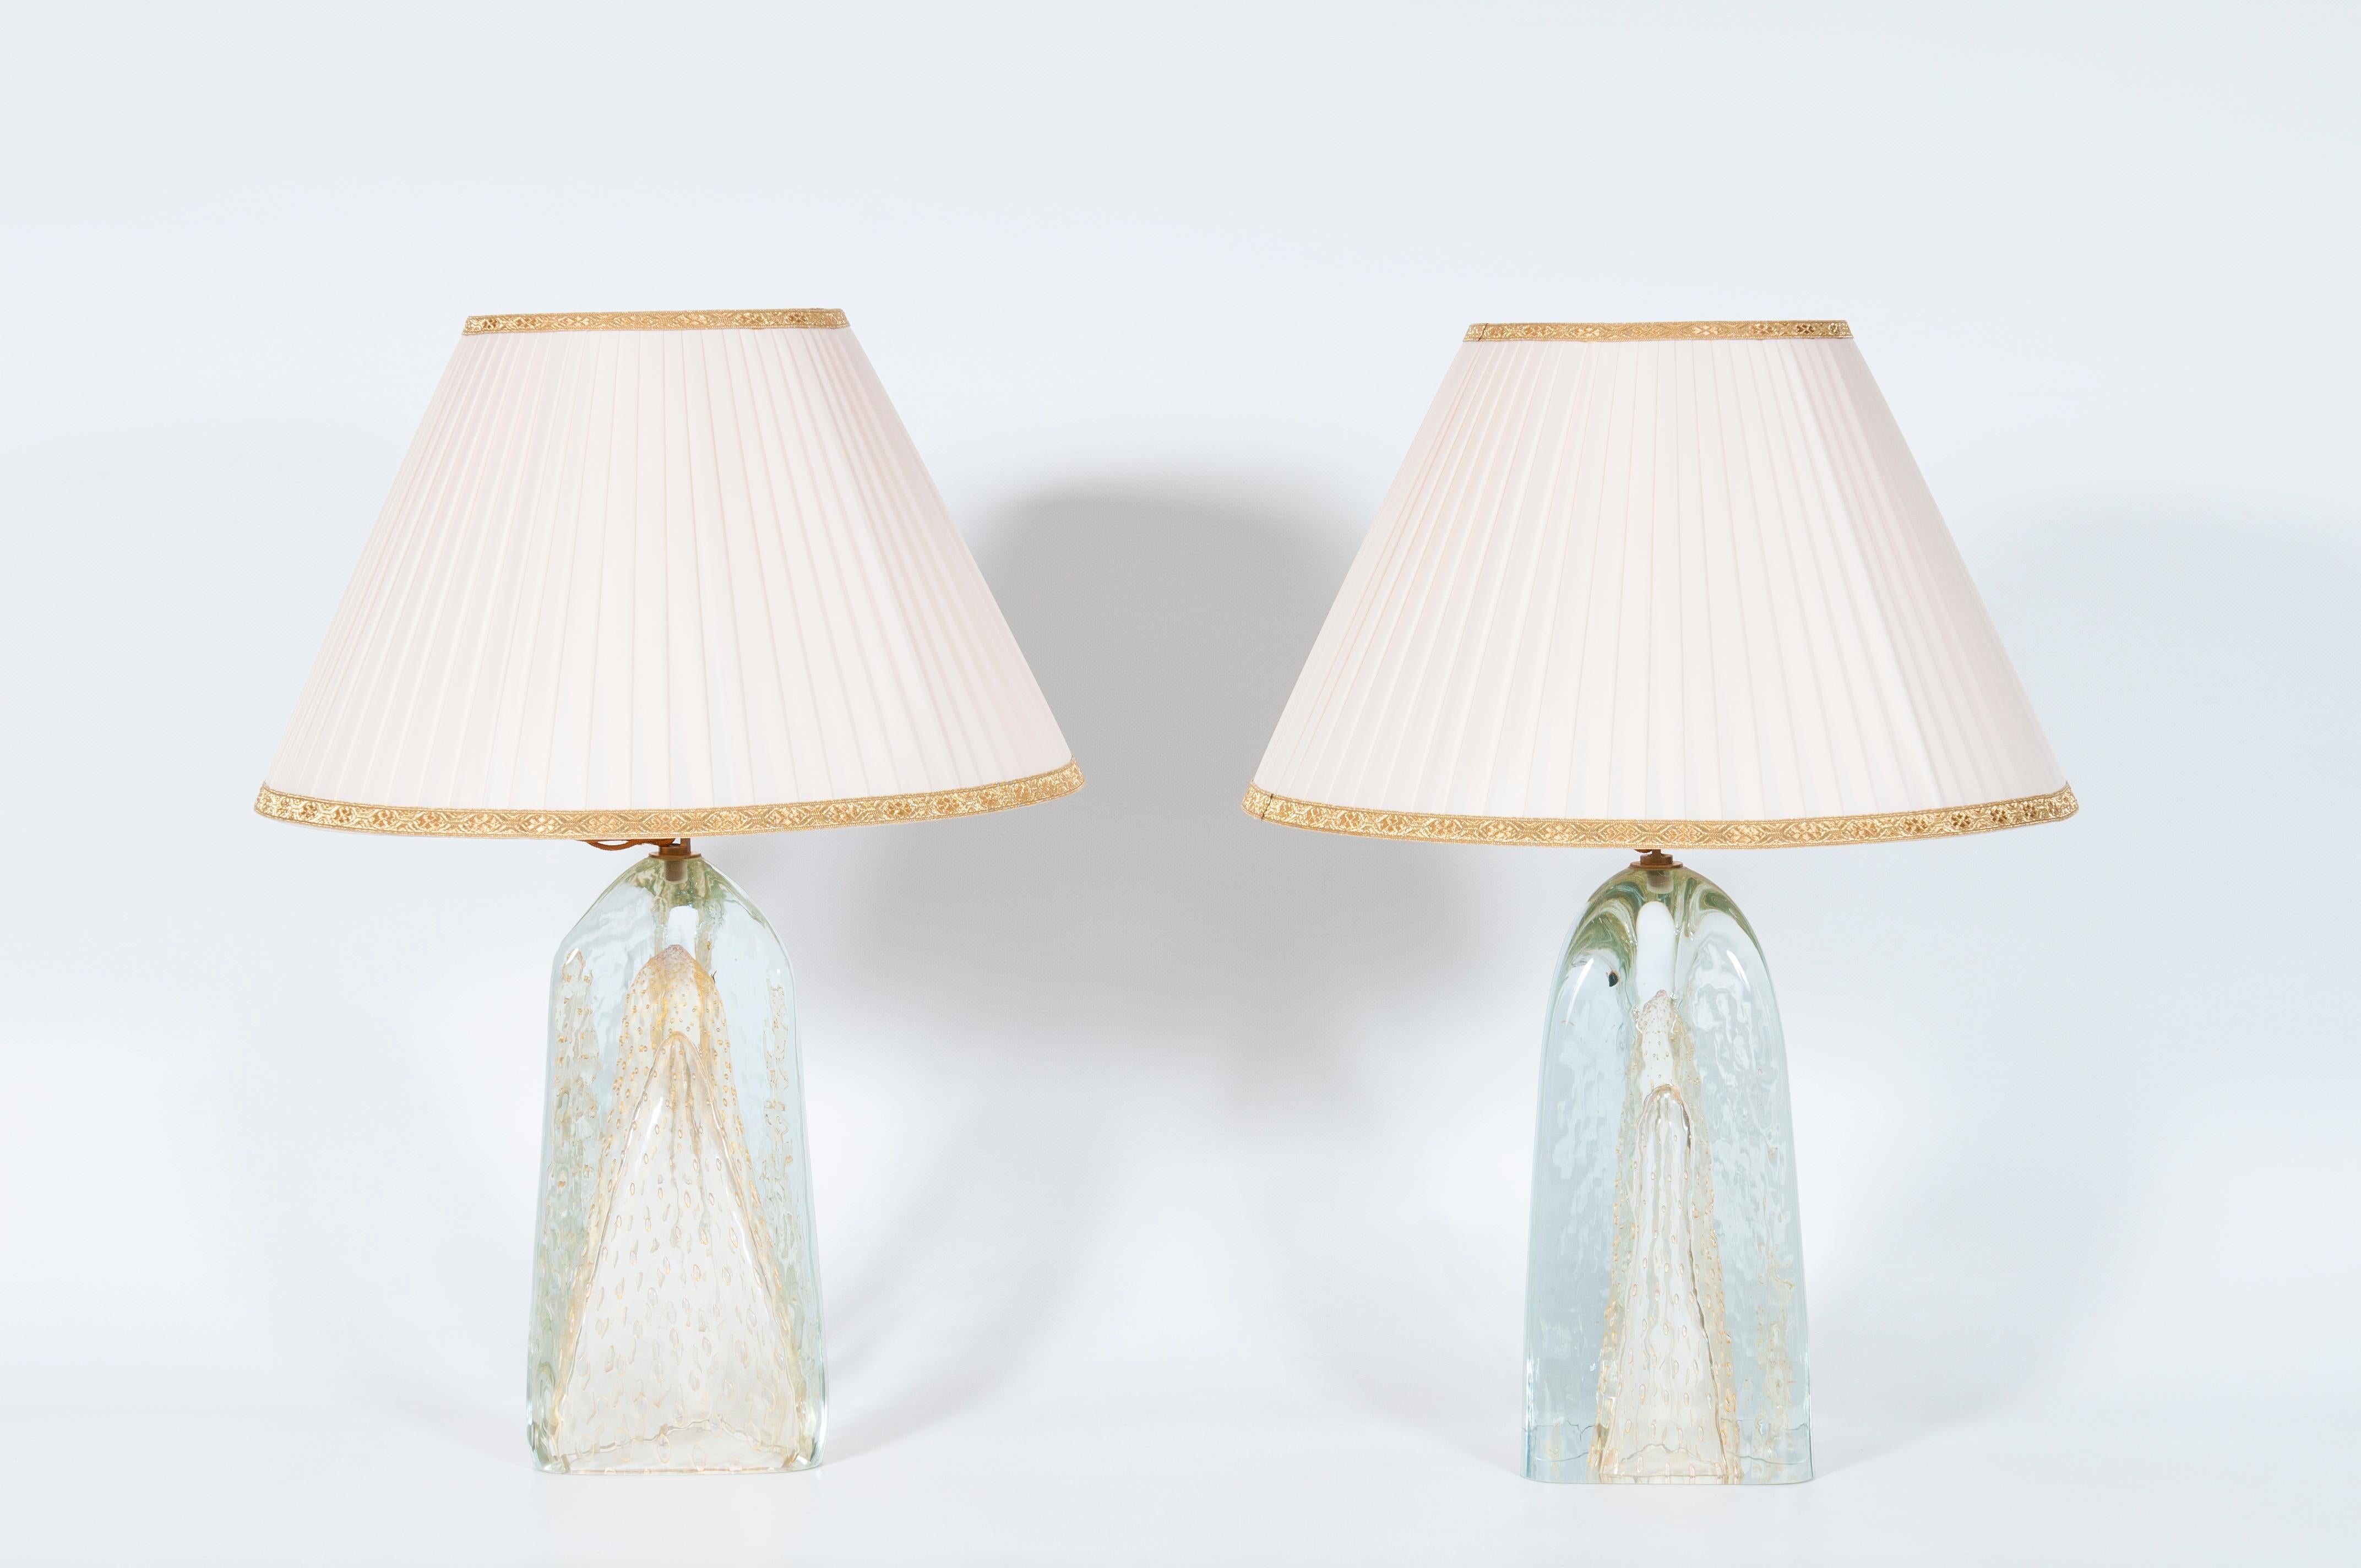 Paire de lampes triangulaires en verre de Murano avec or 24 carats, années 1980

Il s'agit d'une paire de lampes de table italiennes vraiment uniques, entièrement fabriquées à la main sur l'île vénitienne de Murano, vers les années 1980.
Le pied